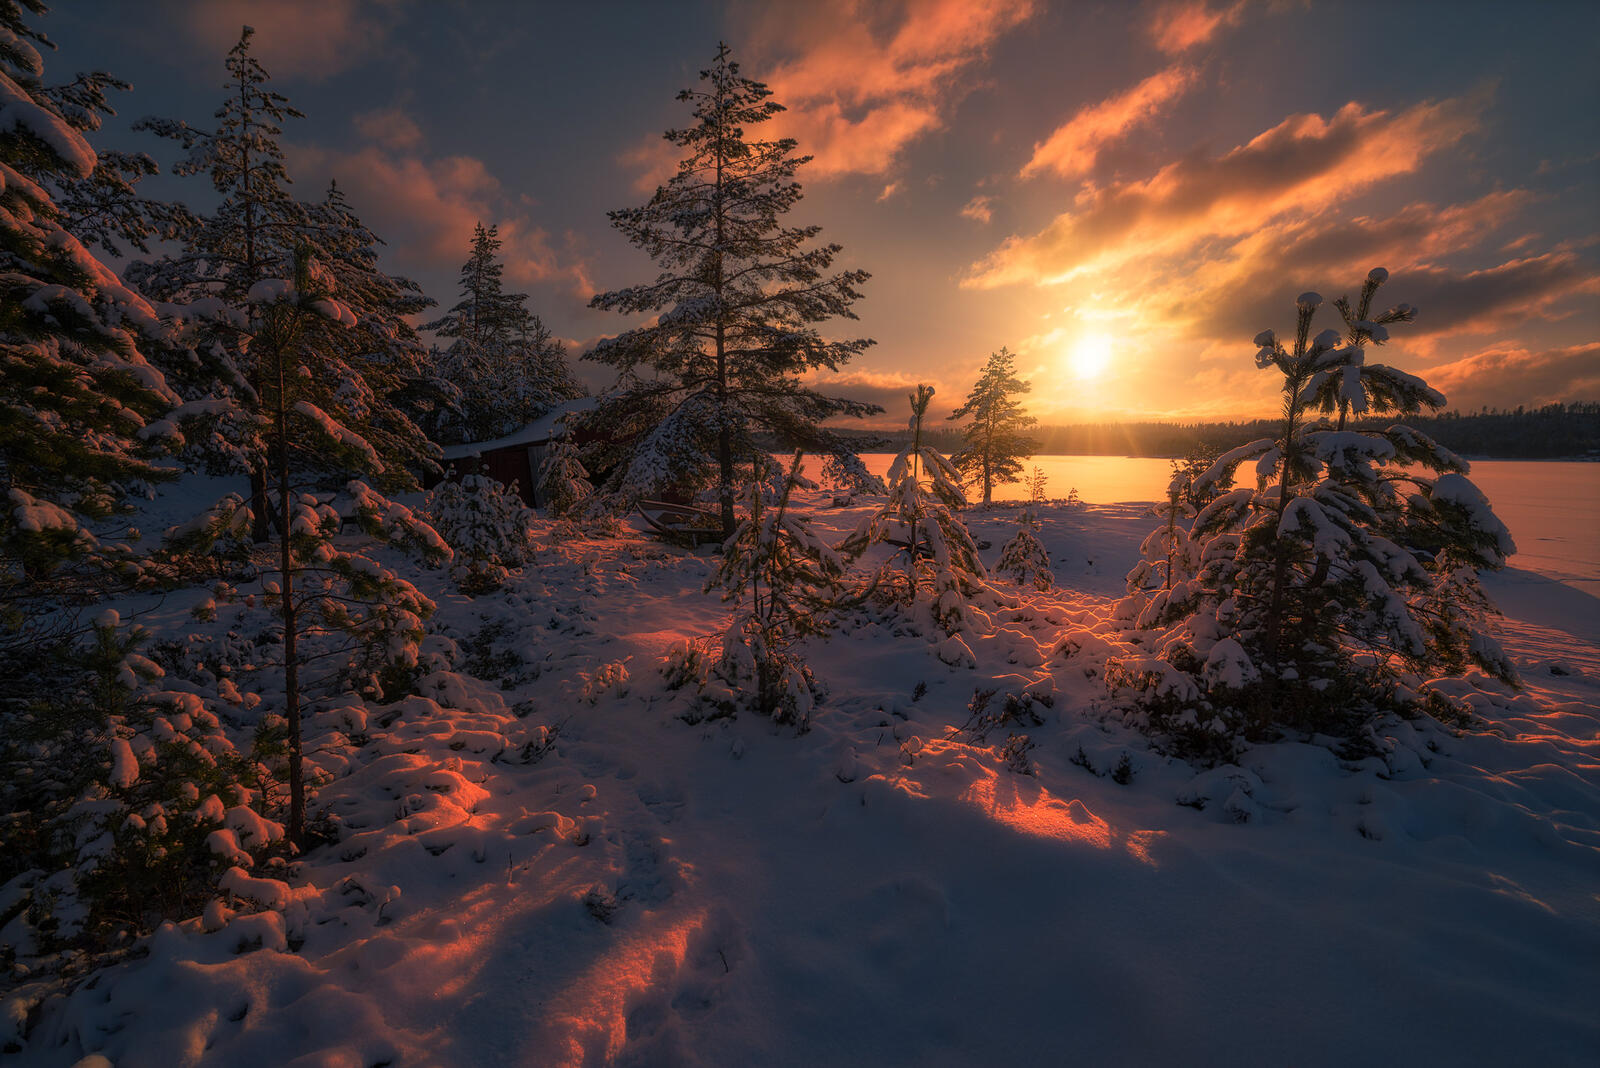 Обои солнечная погода зима Норвегия на рабочий стол